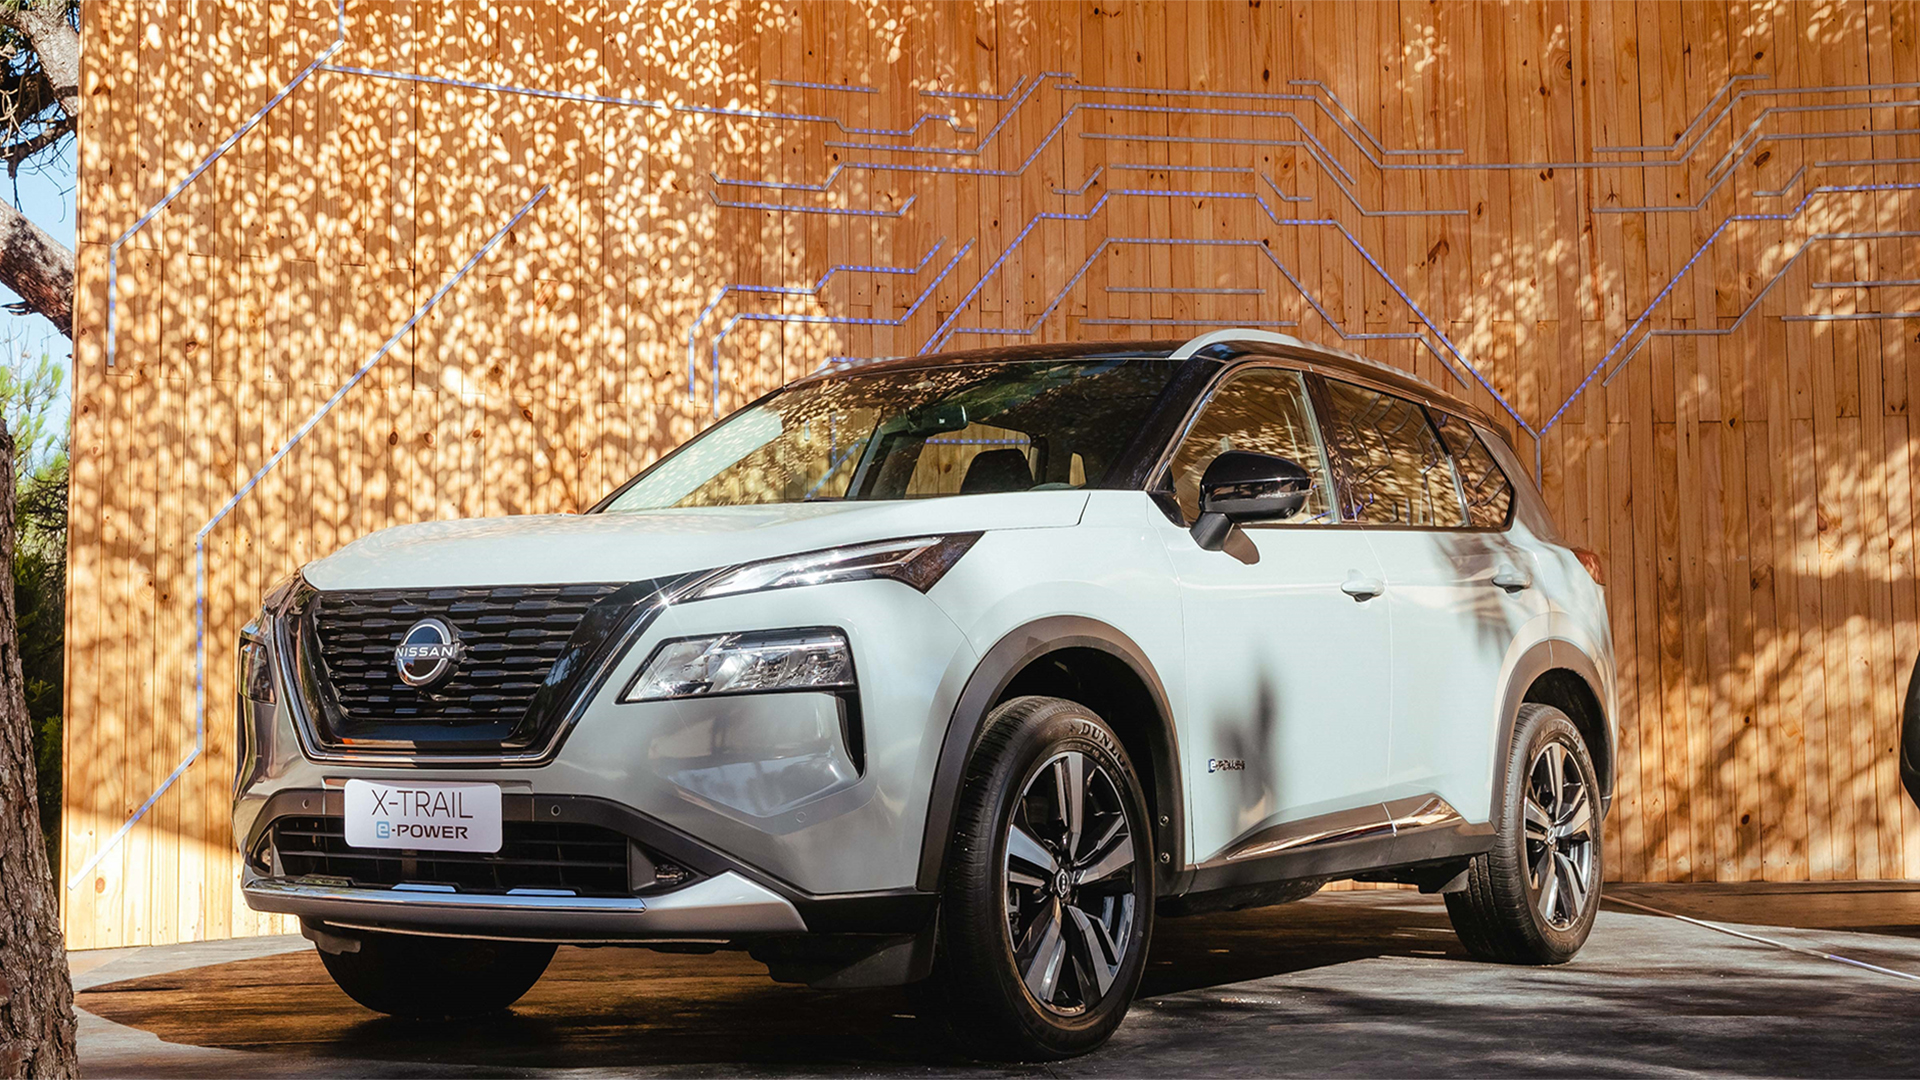 El Nissan X-Trail E-Power llegará este año a Argentina importado desde Japón, introduciendo la tecnología desarrollada por la marca para vehículos de bajas emisiones que supera a los híbridos convencionales